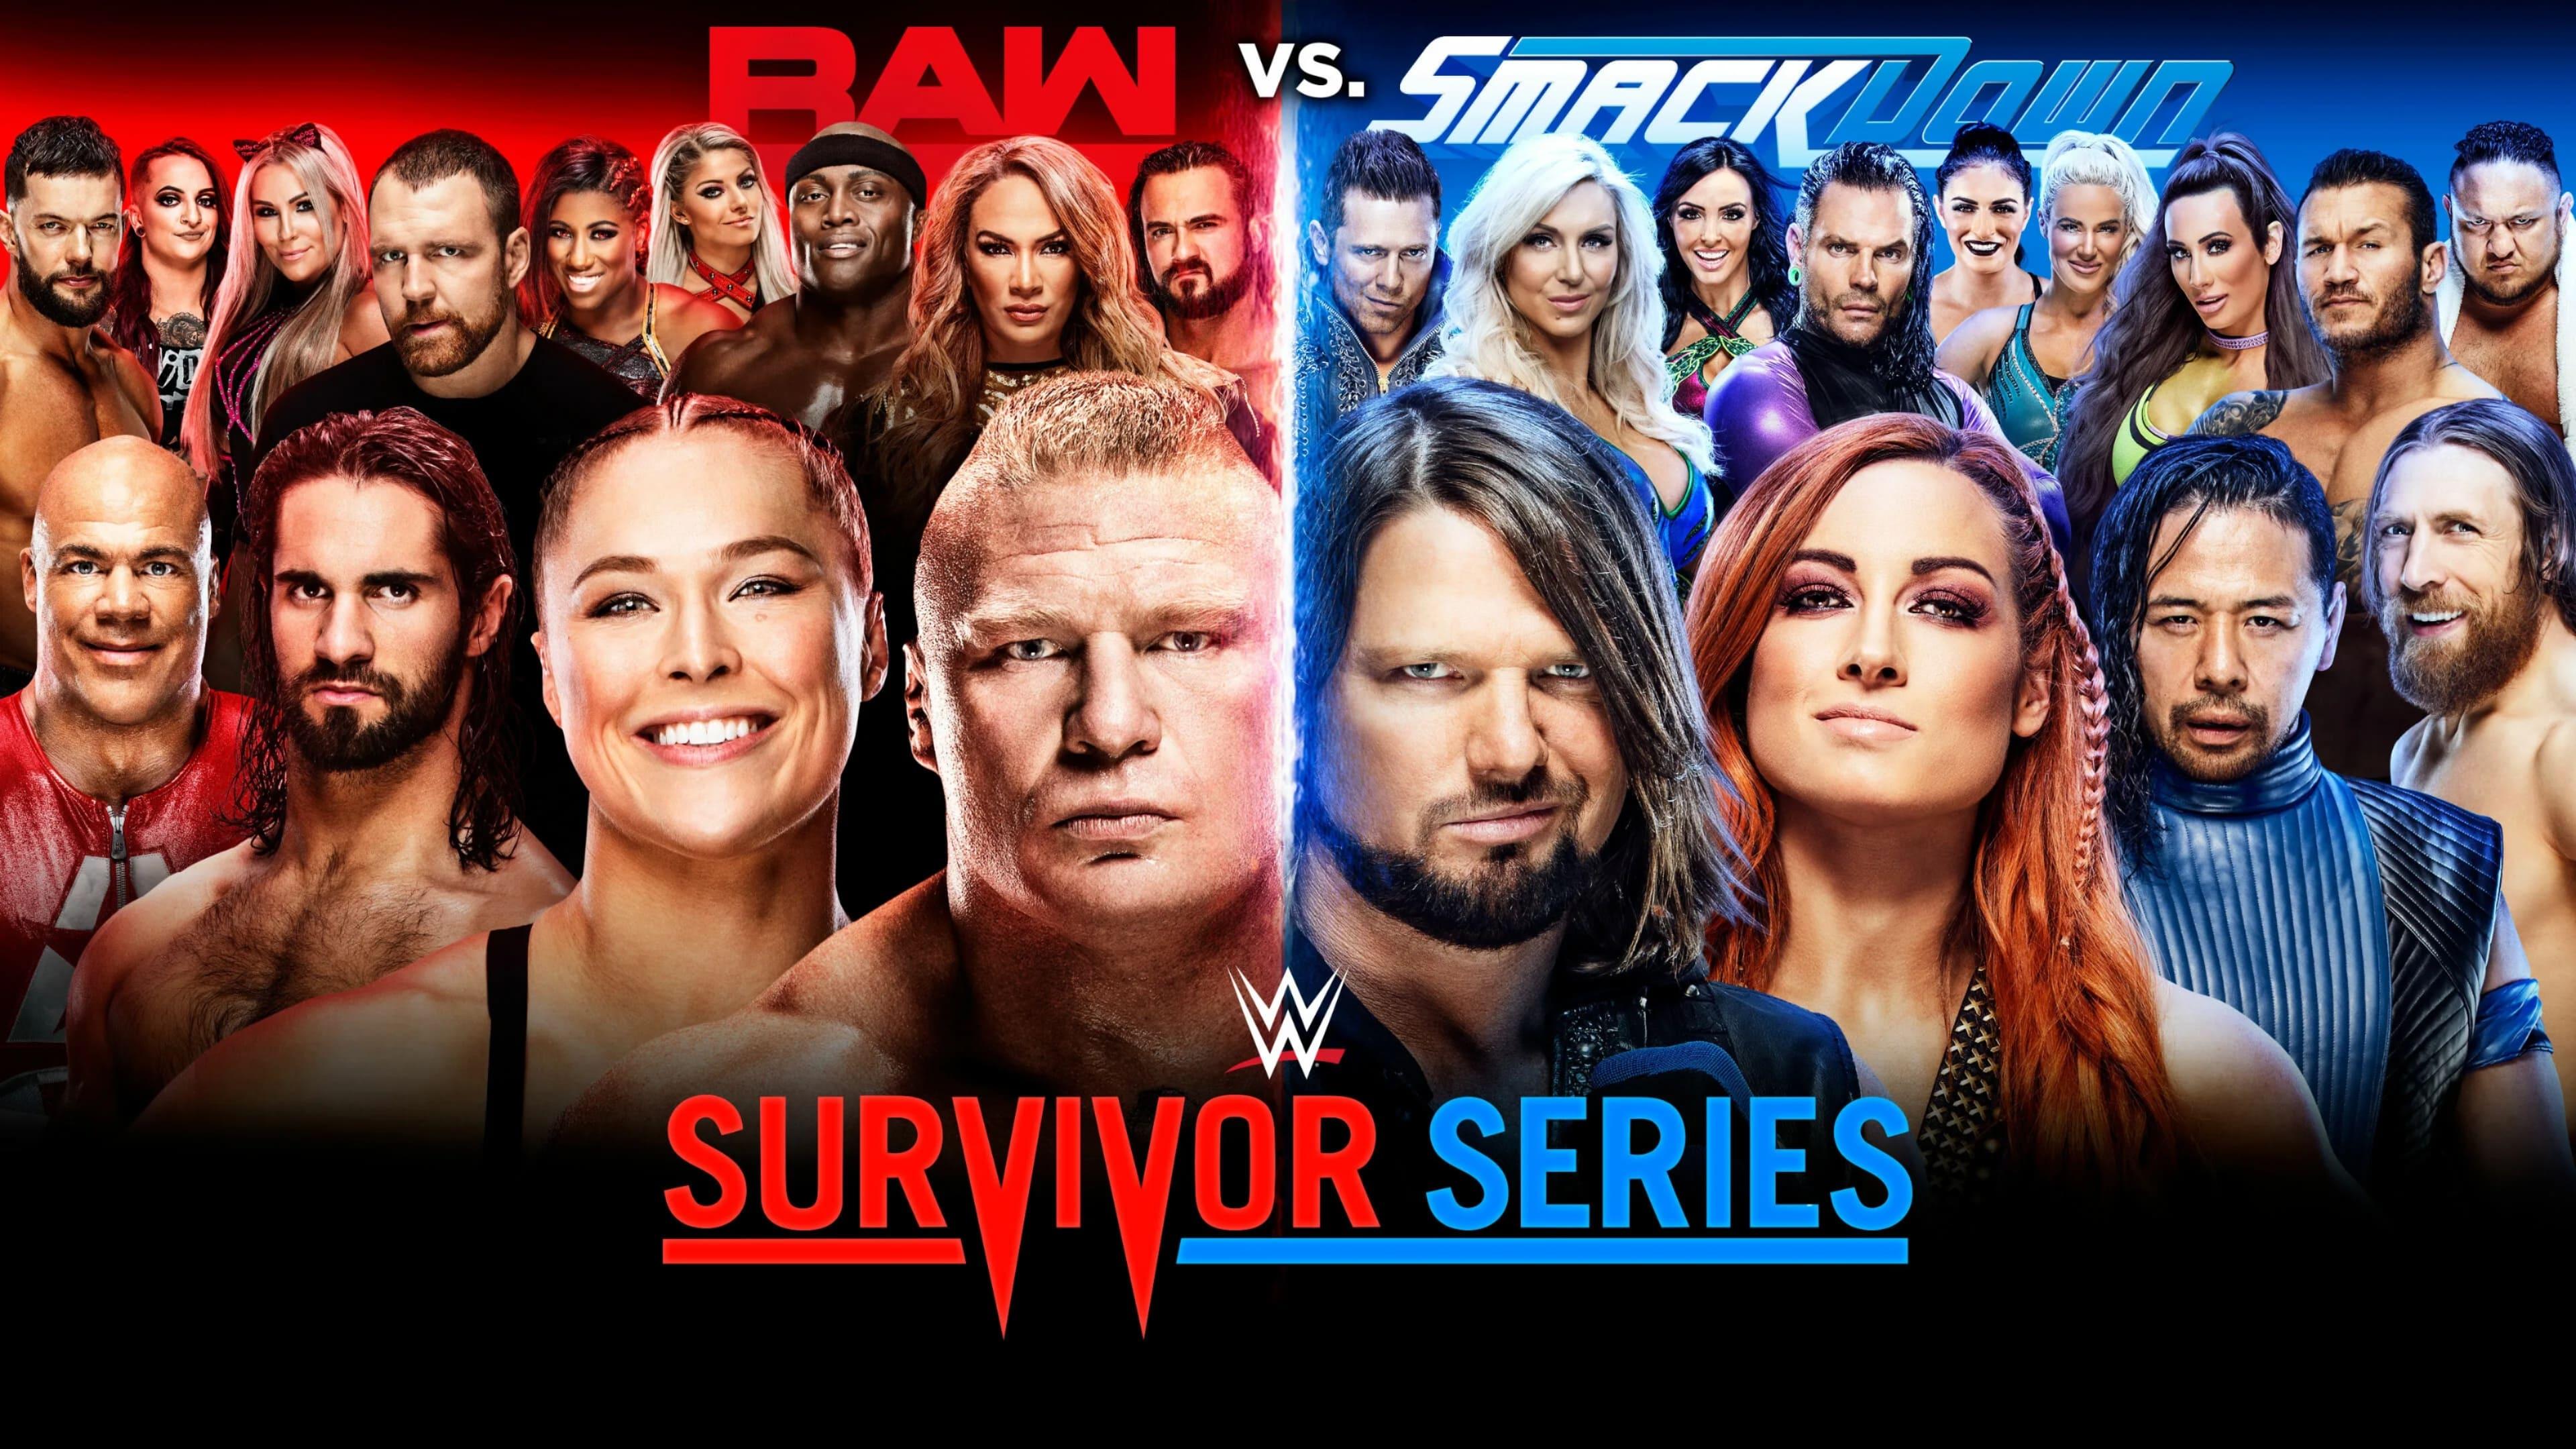 WWE Survivor Series 2018 backdrop